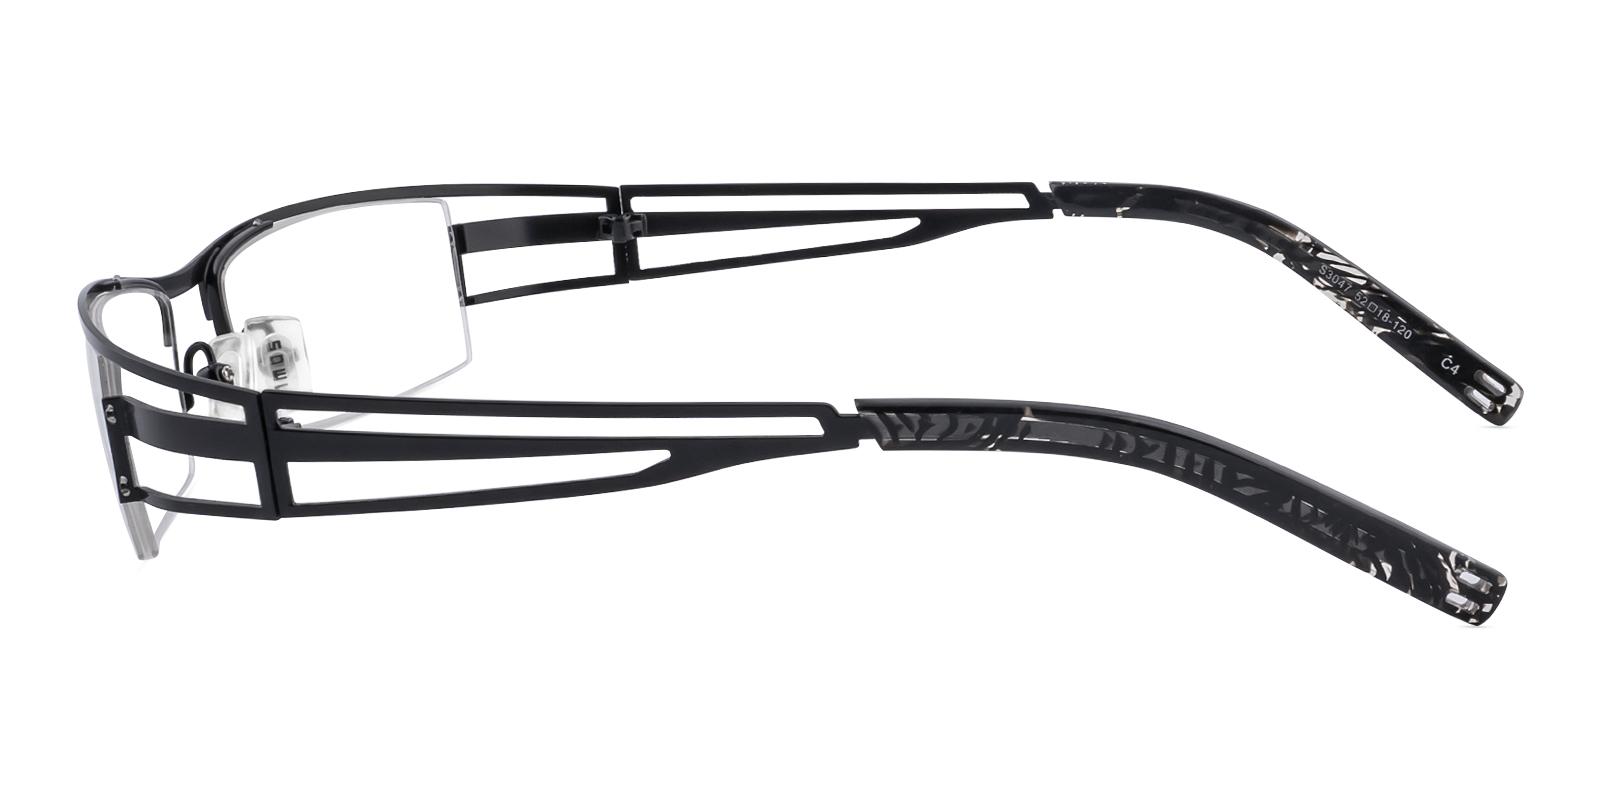 Artics Black Metal Eyeglasses , NosePads , SportsGlasses Frames from ABBE Glasses